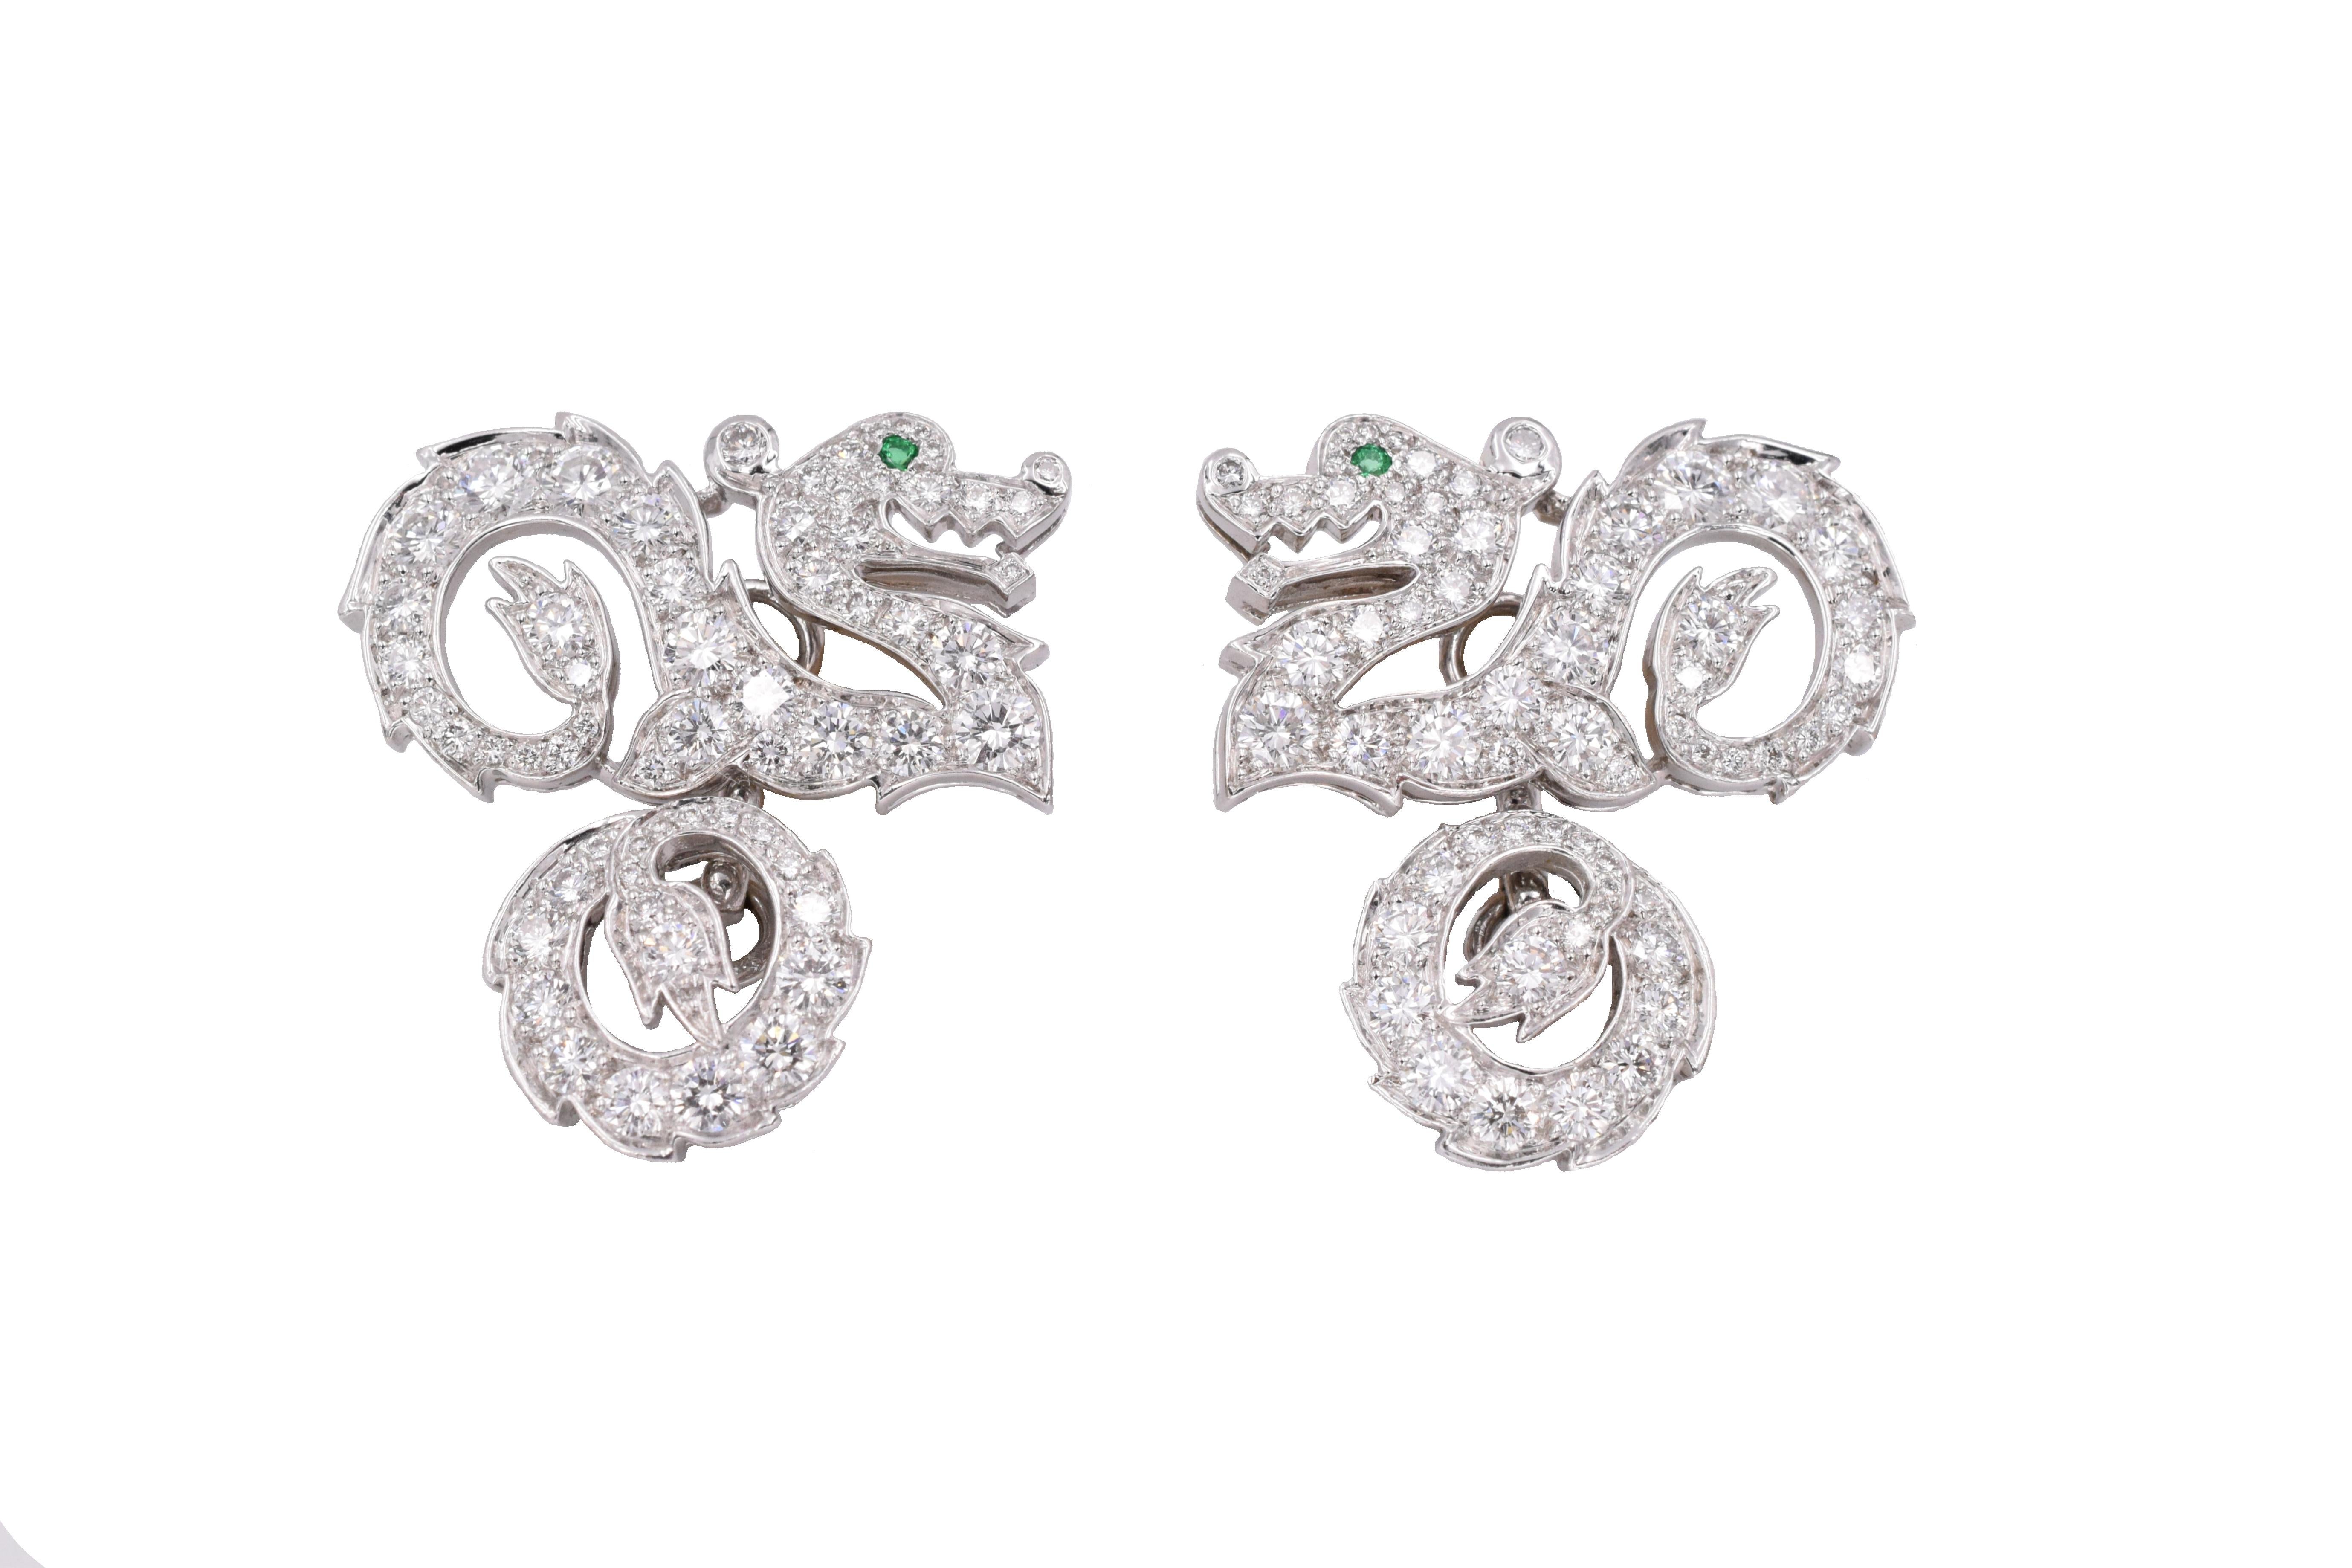 Cartier Diamond Dragon Manschettenknöpfe,
Paar schöne Diamanten verkrustet  drachen mit Smaragdaugen.
Signiert Cartier 2001 und nummeriert